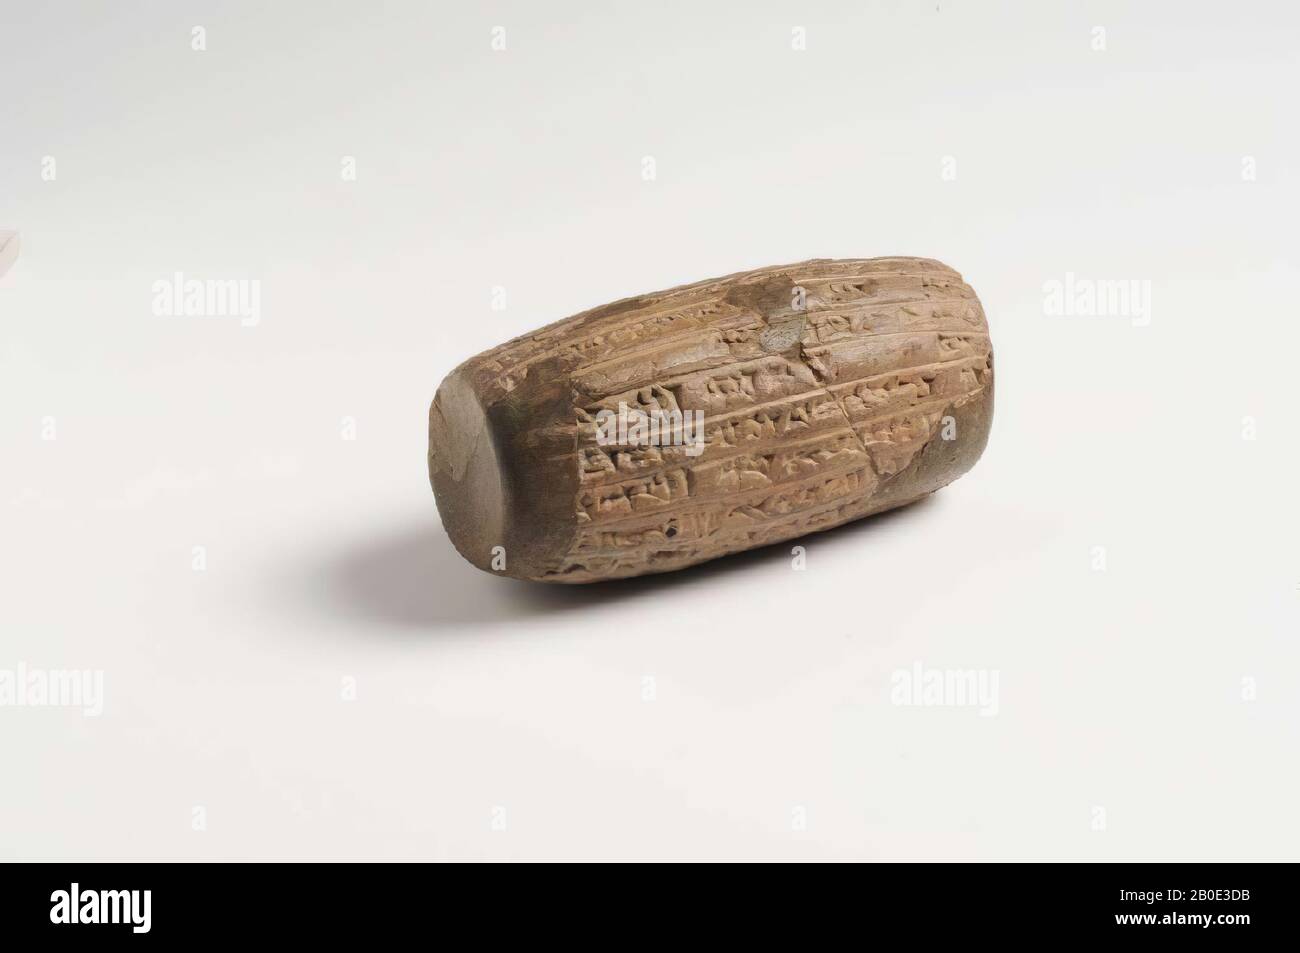 Un cilindro di argilla con scrittura cuneiforme. Re Nebuchadnezzar è menzionato nel testo., Iscrizione, ceramica, argilla, L 10 cm, D 6 cm, periodo neobabilonese 605-562 a.C., sconosciuto Foto Stock